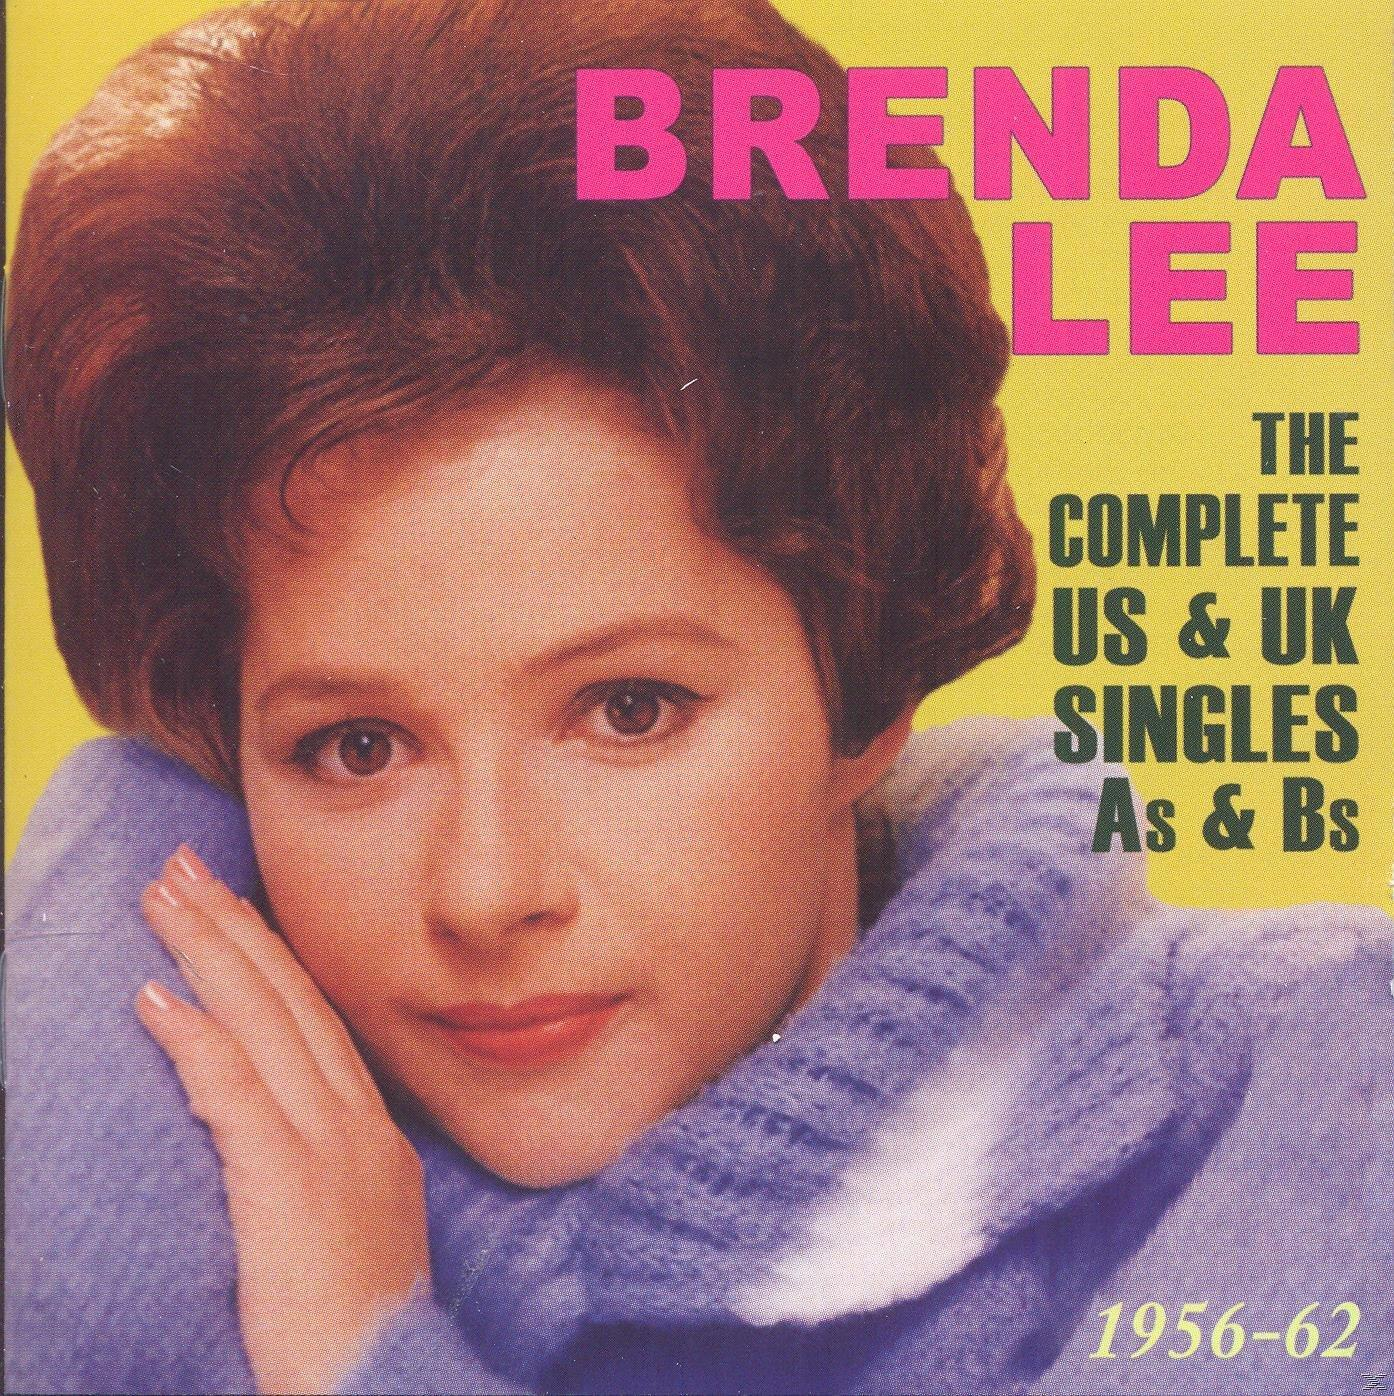 Brenda Lee - The Complete & Singles - Us As & 1956-62 Bs Uk (CD)